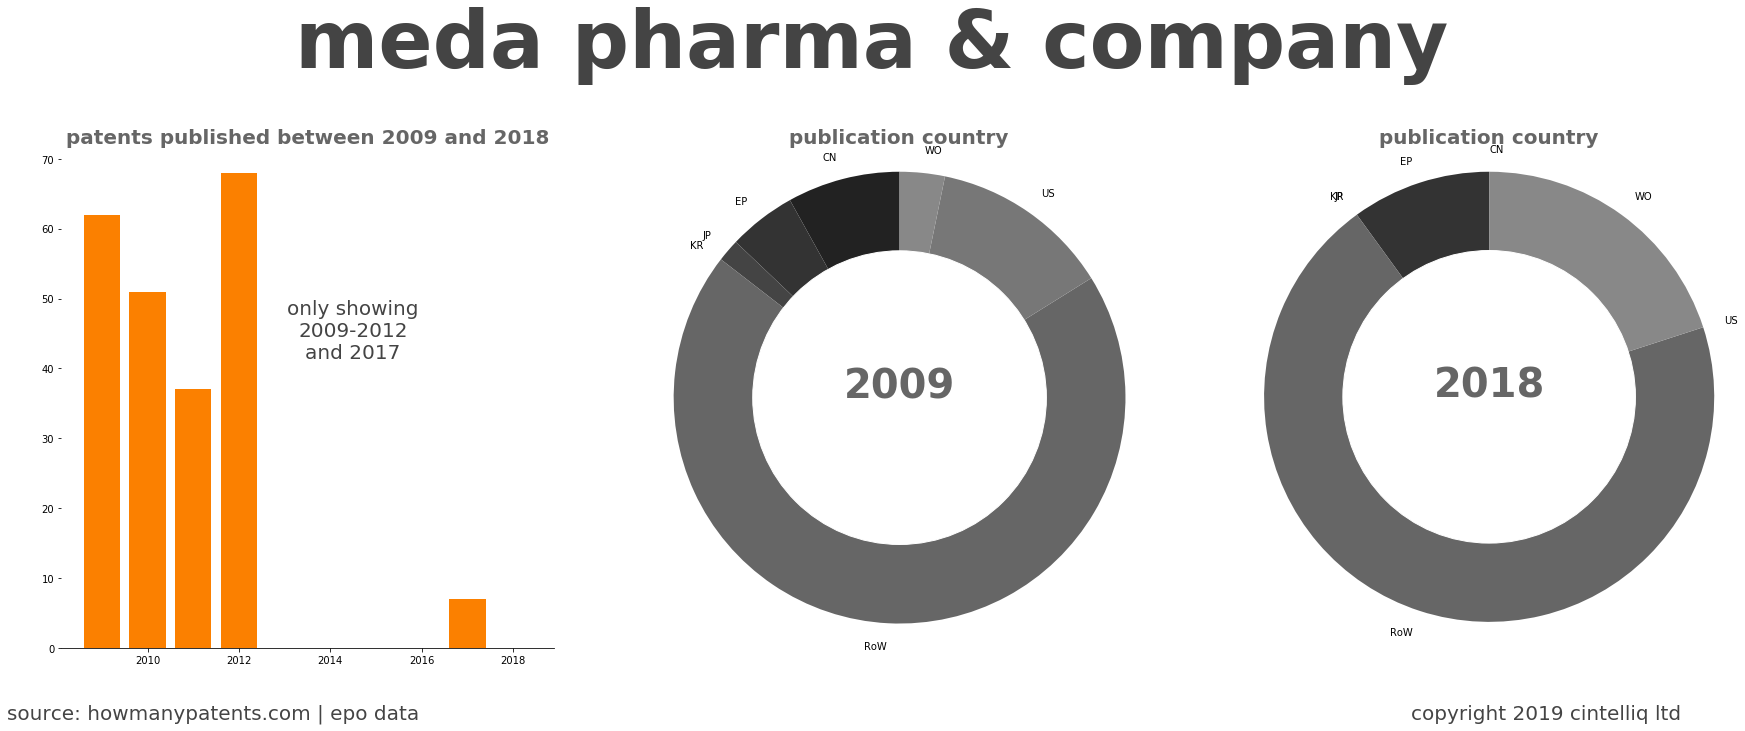 summary of patents for Meda Pharma & Company